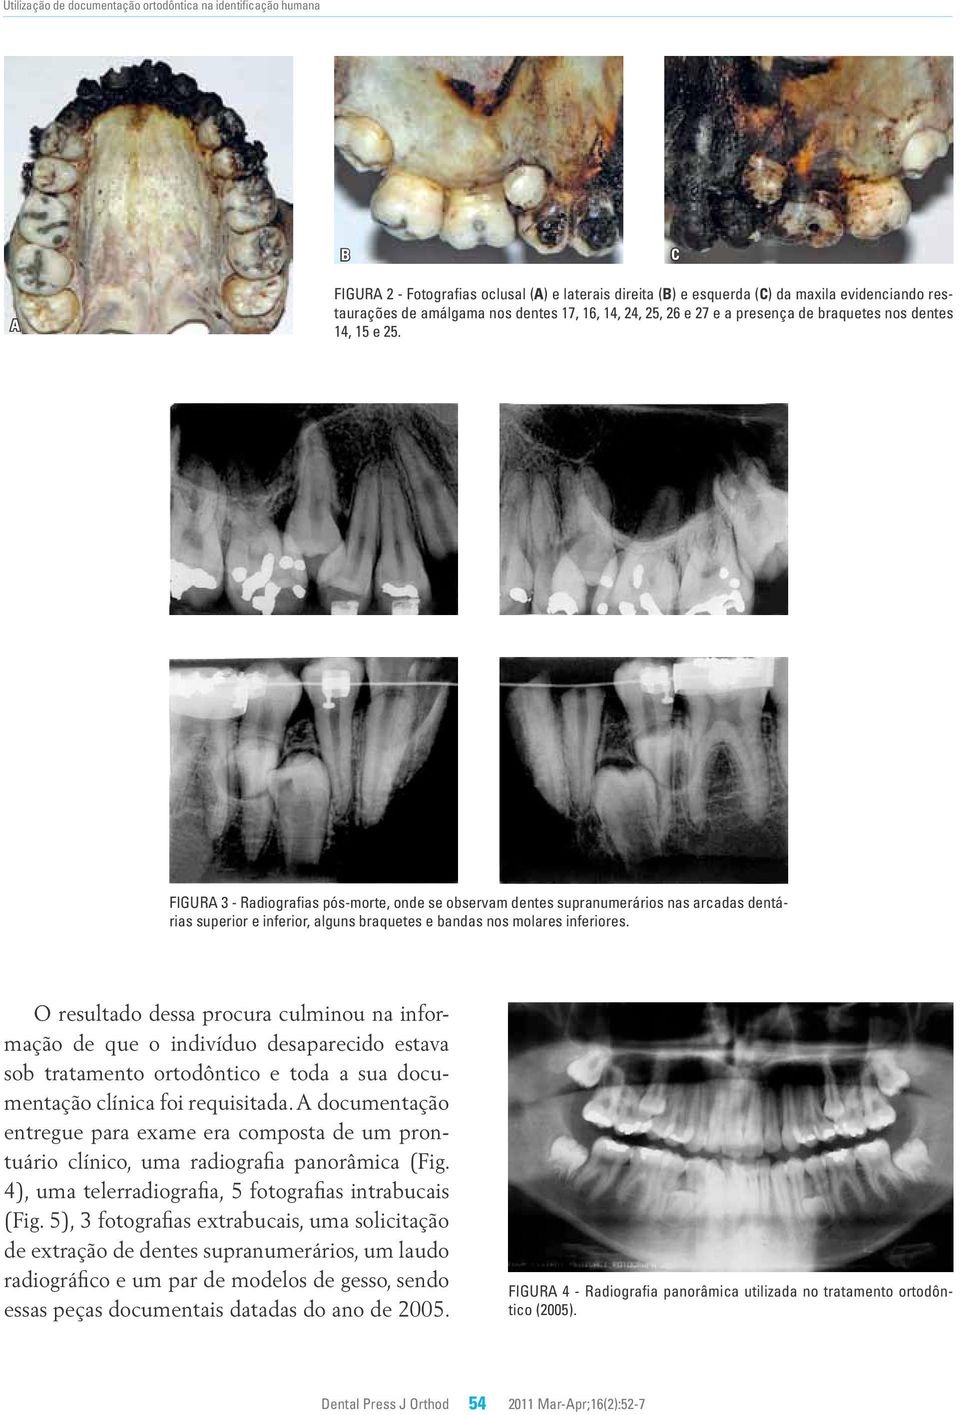 Figura 3 - Radiografias pós-morte, onde se observam dentes supranumerários nas arcadas dentárias superior e inferior, alguns braquetes e bandas nos molares inferiores.